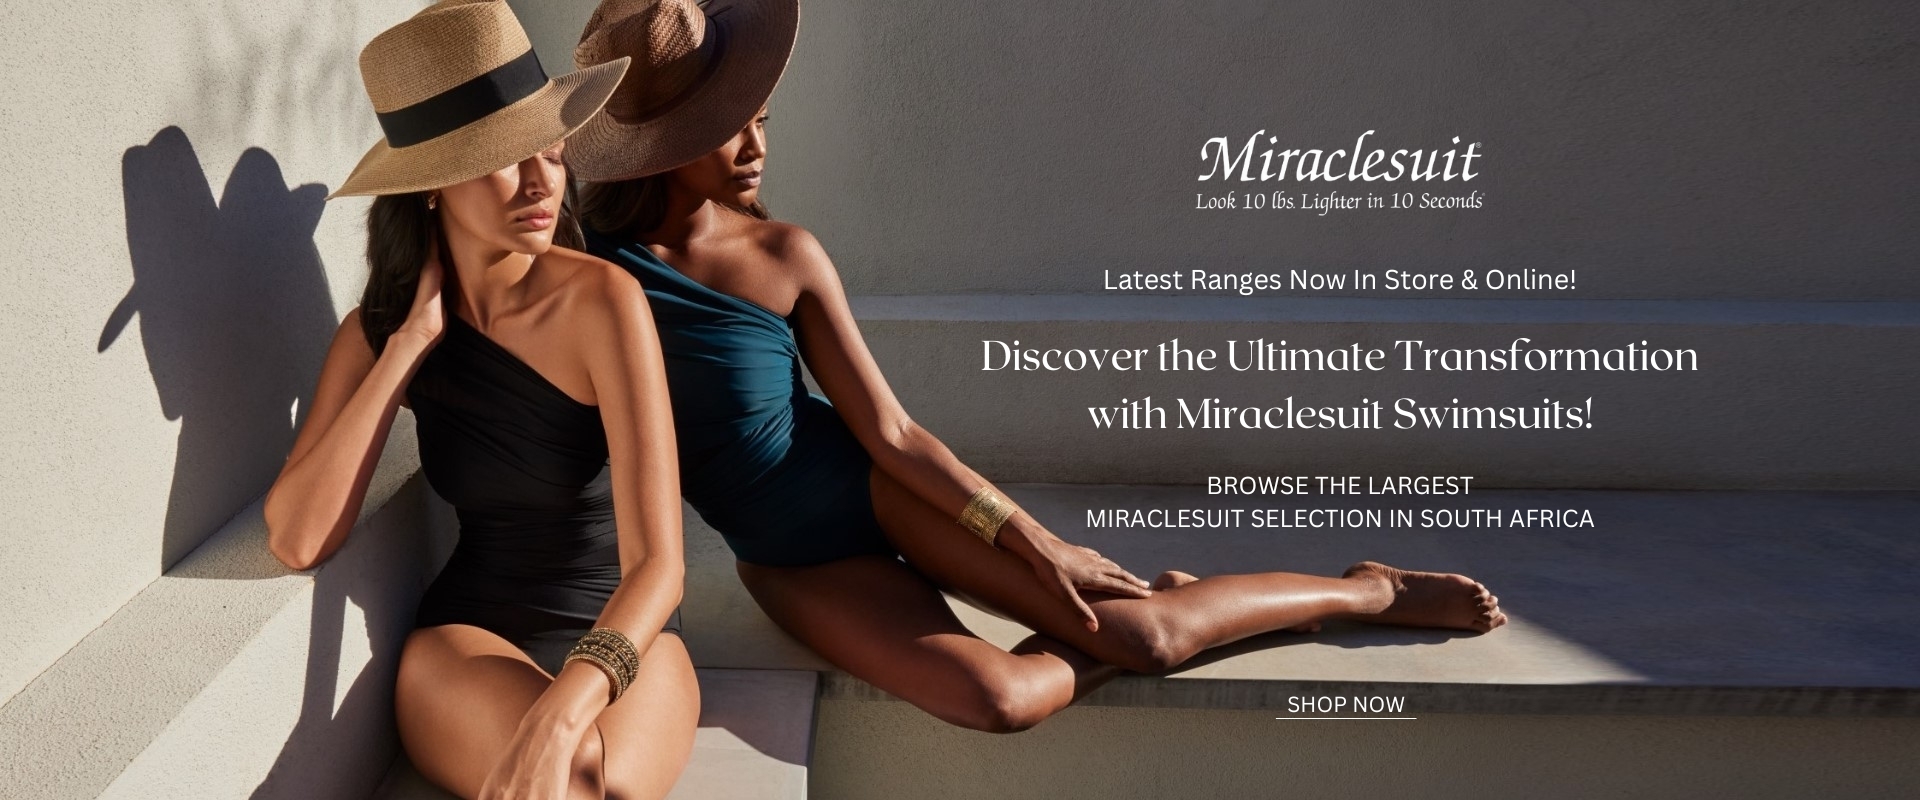 new miraclesuit range desktop banner